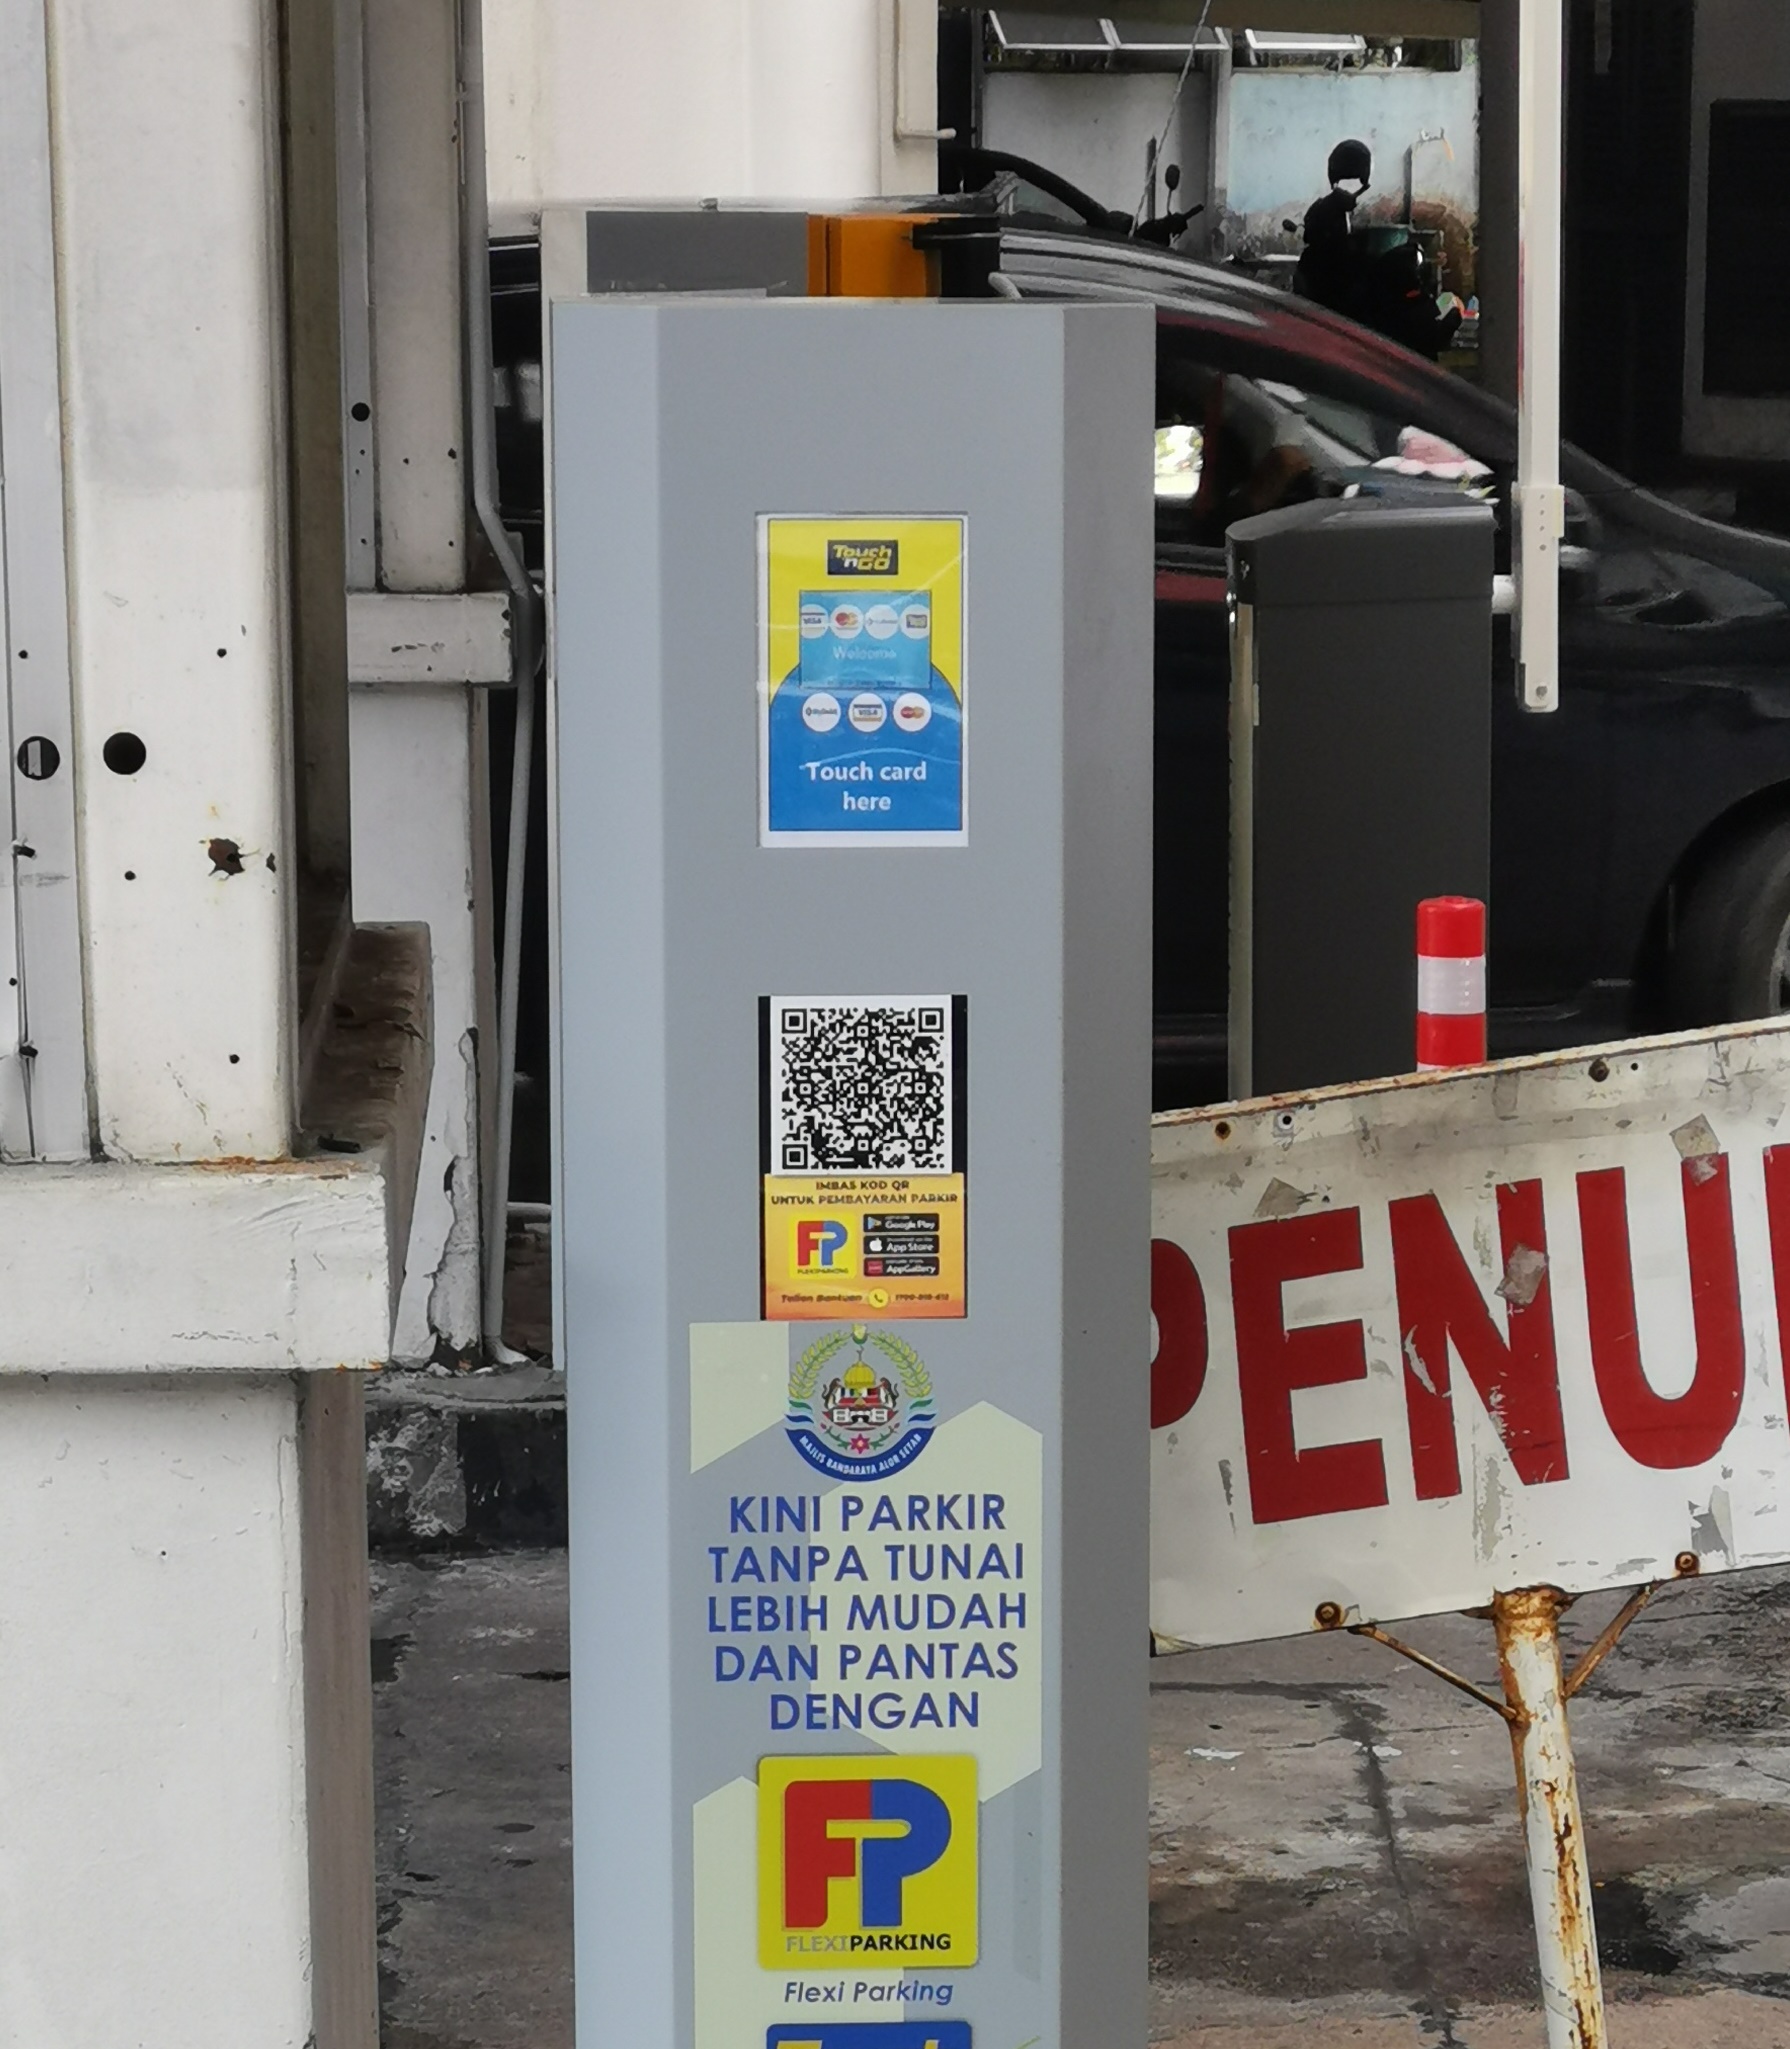 下载Flexi Parking或刷卡 米都UTC无现金停车